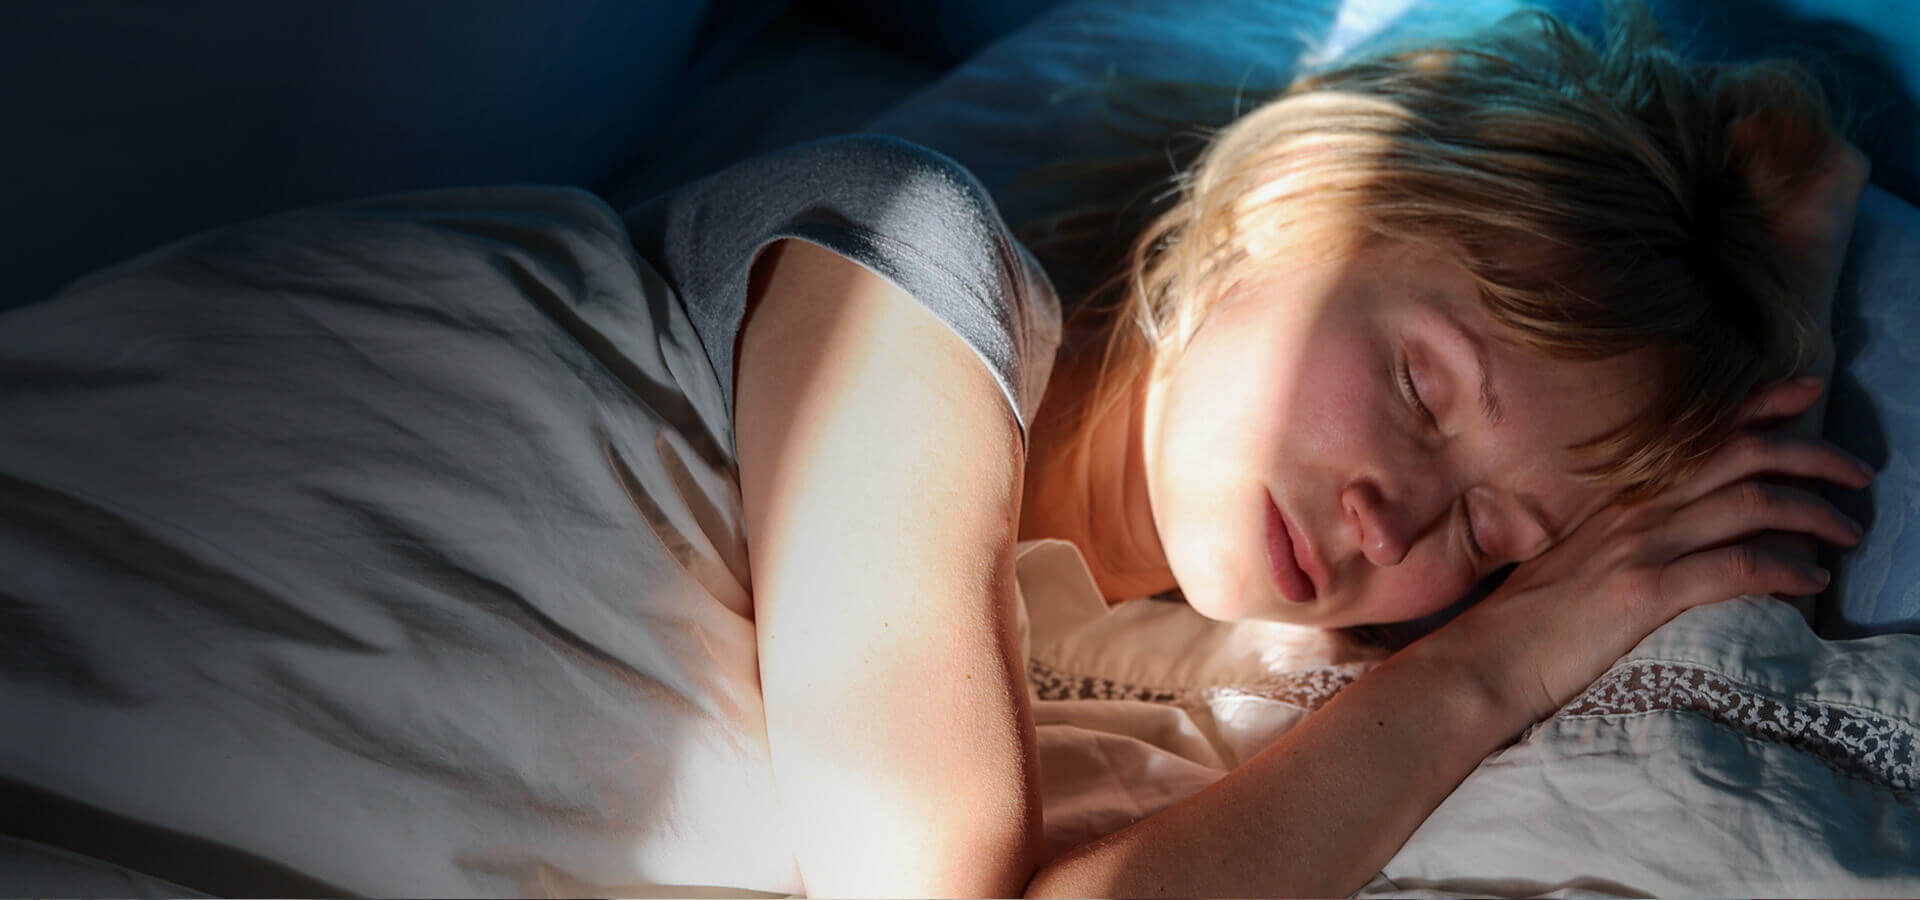 Eine Frau liegt schlafend im Bett. Die Sonnenstrahlen der hochfahrenden Rollos scheinen in den dunklem Raum auf ihr Gesicht.